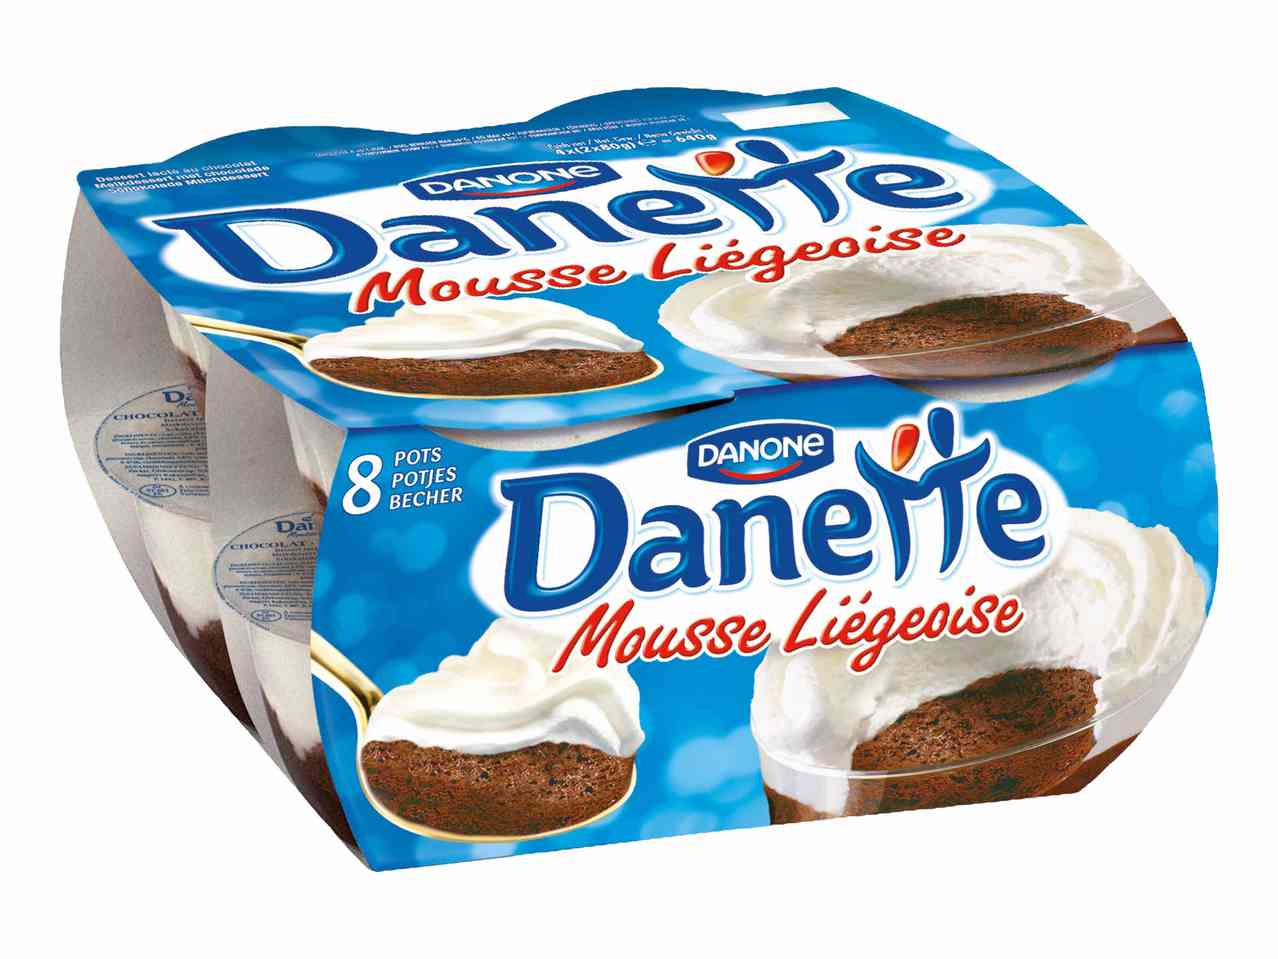 Danone Danette Mousse Liegeoise